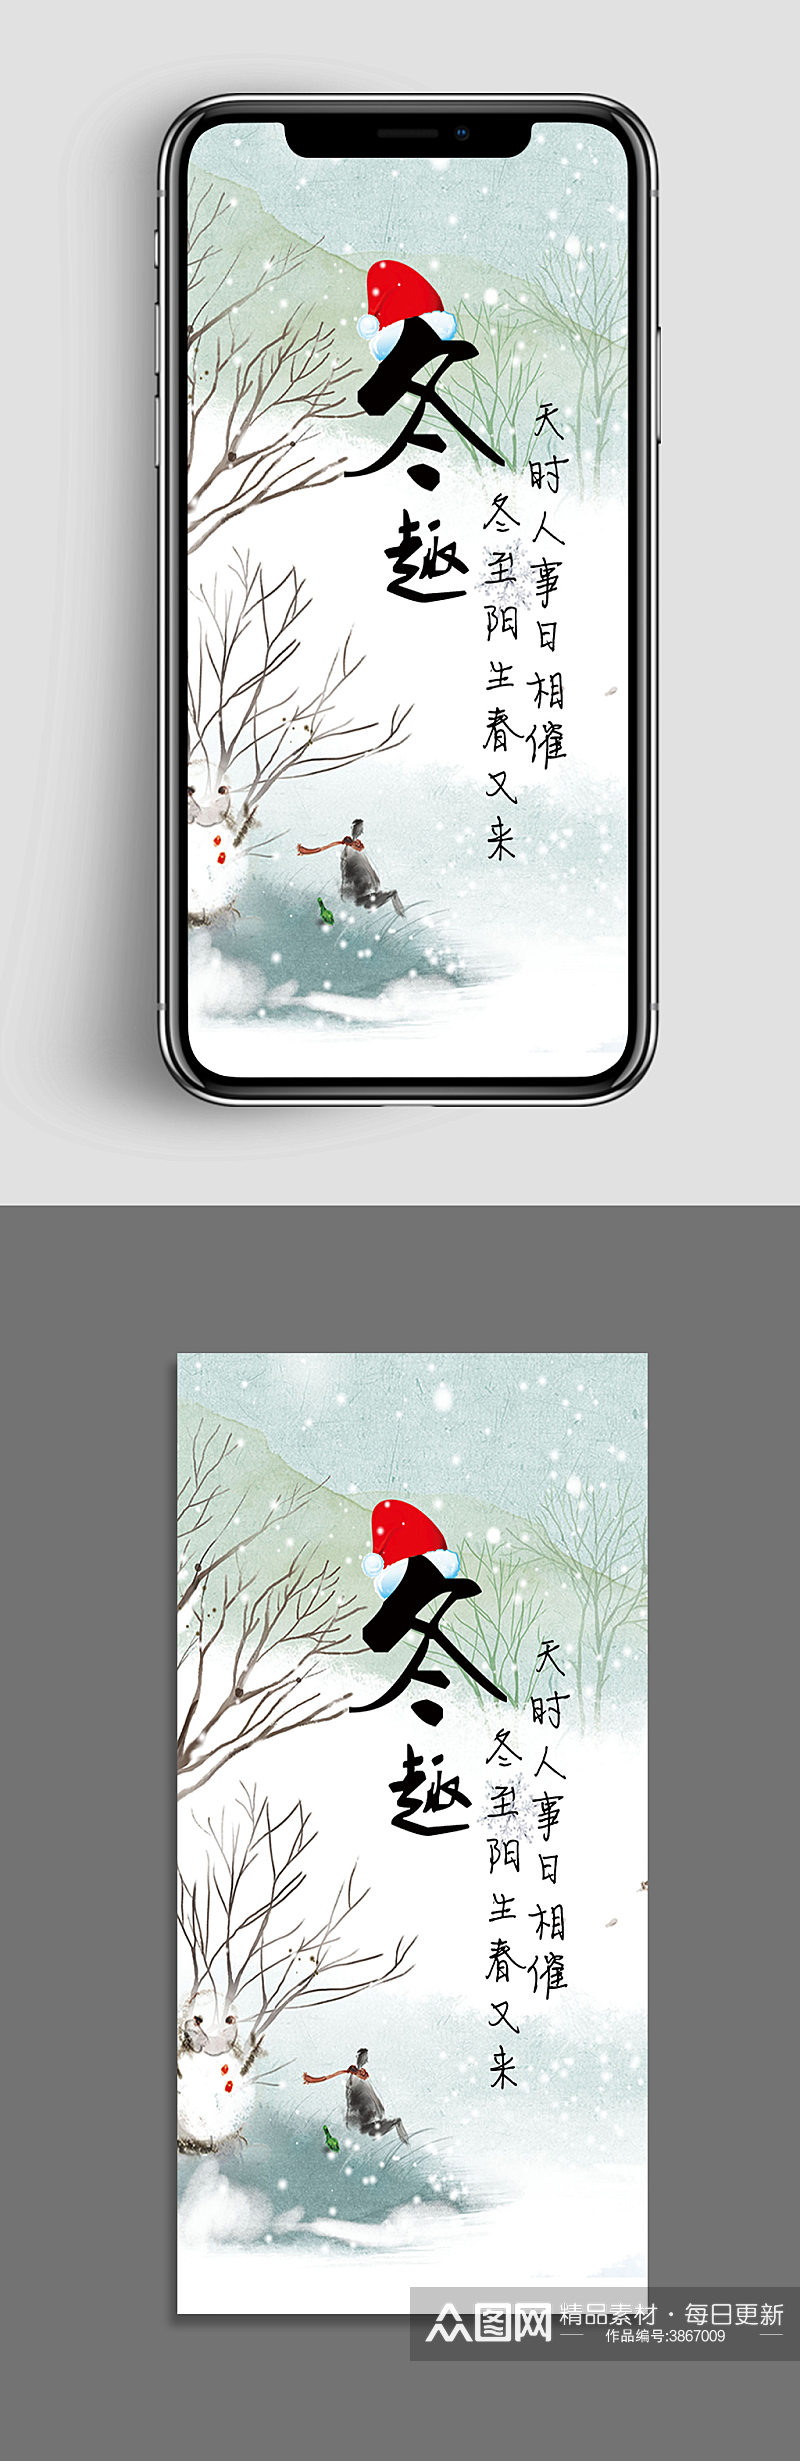 冬天乐趣冬至传统节日手机app闪屏素材